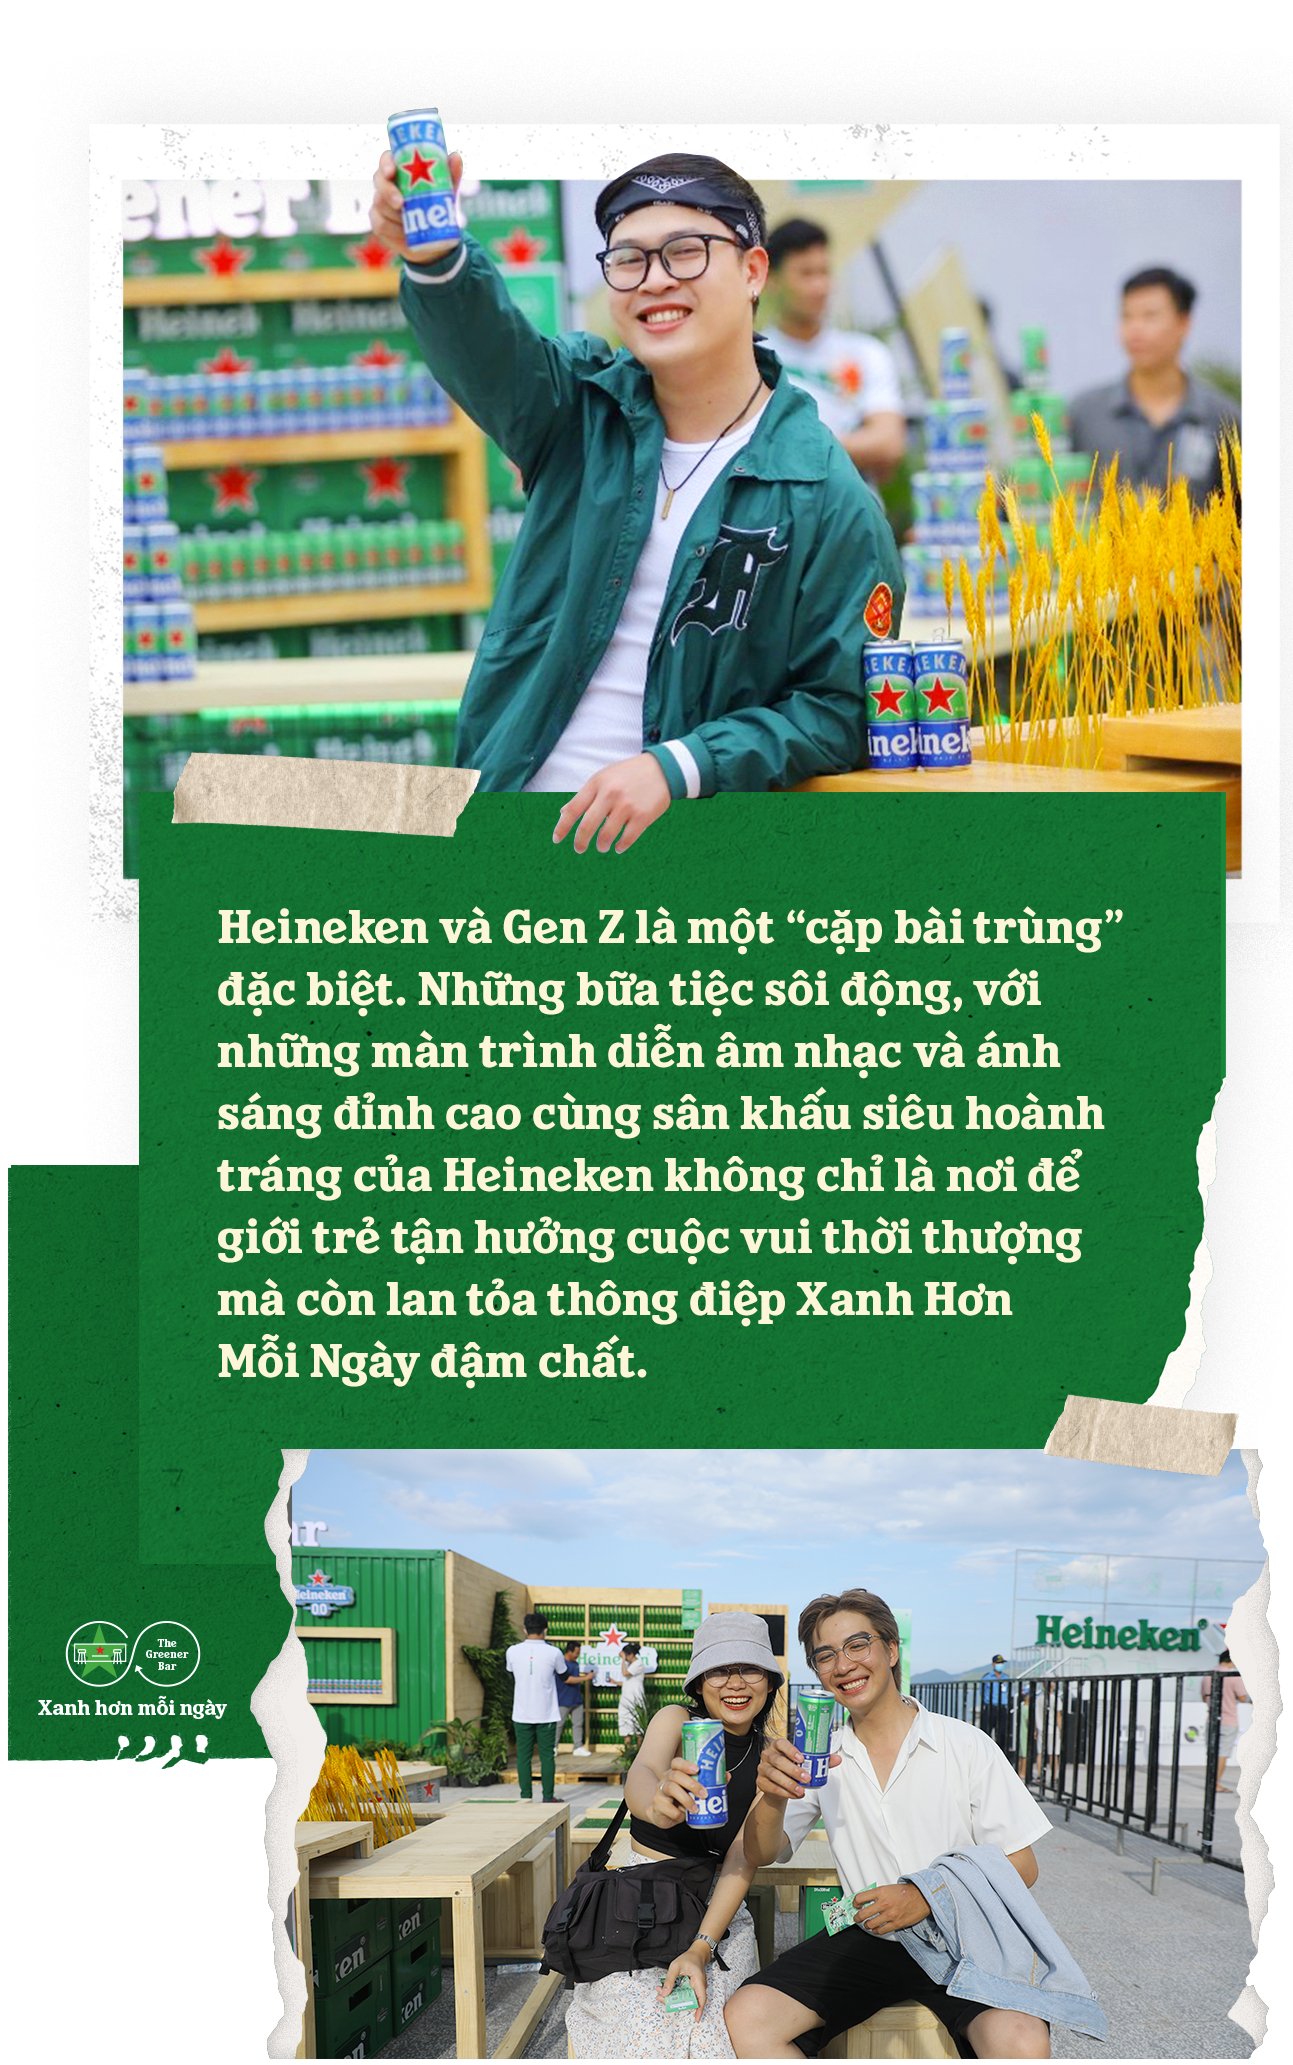 Gen Z và trải nghiệm xanh hơn mỗi ngày tại loạt sự kiện đình đám của Heineken - ảnh 5